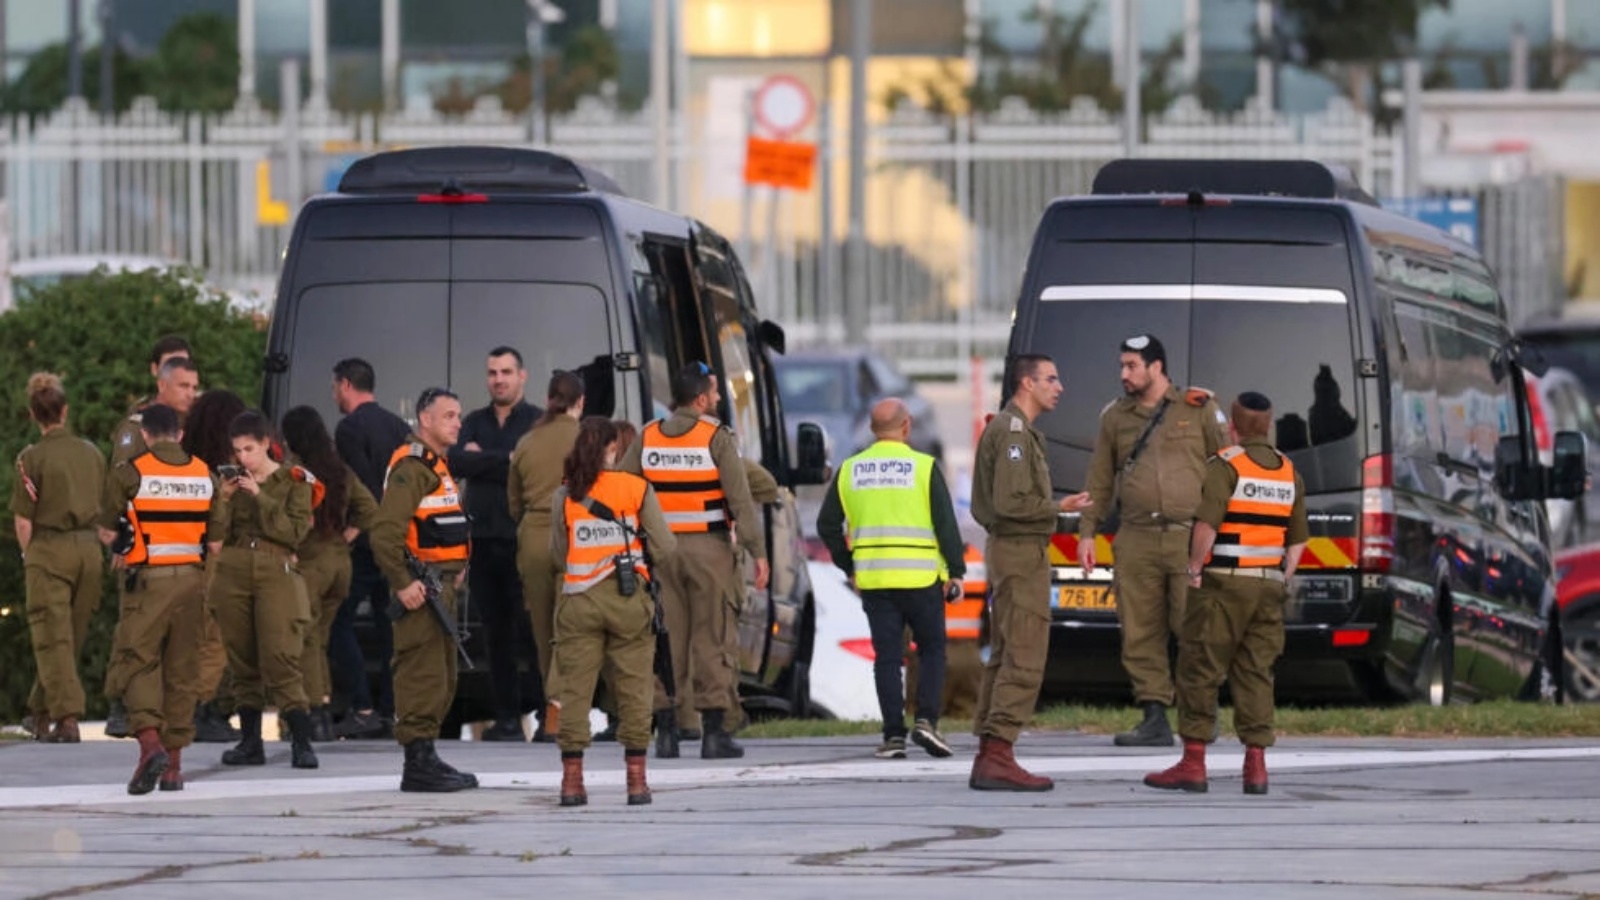 قوات الأمن الإسرائيلية تقف بجوار الحافلات المنتظرة عند مهبط طائرات الهليكوبتر في مركز شنايدر الطبي في تل أبيب قبل إطلاق سراح الرهائن الإسرائيليين